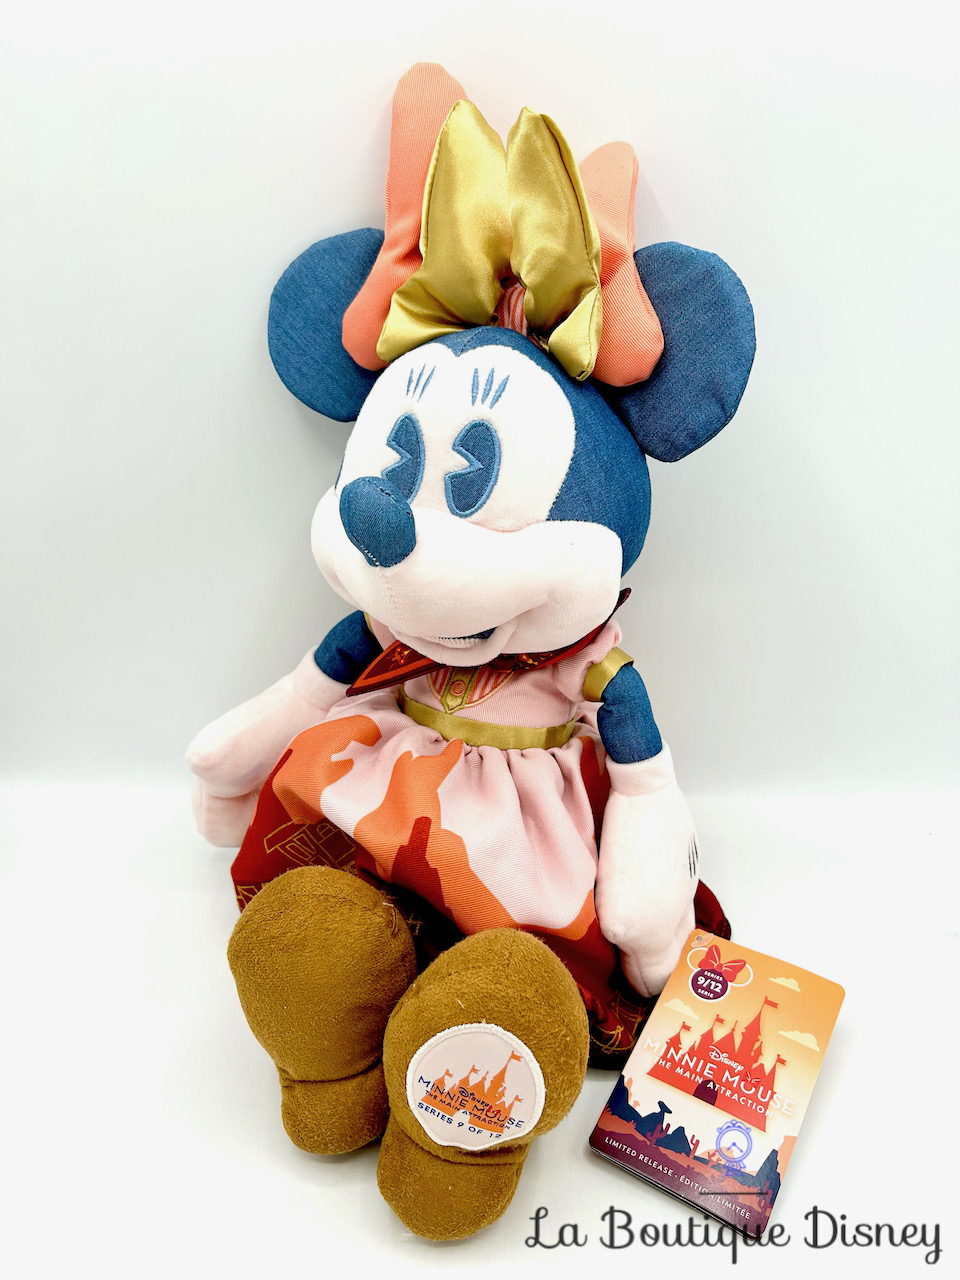 Peluche Minnie Mouse The Main Attraction 9 sur 12 Big Thunder Mountain Railroad Disney Store 2020 Édition limitée 43 cm